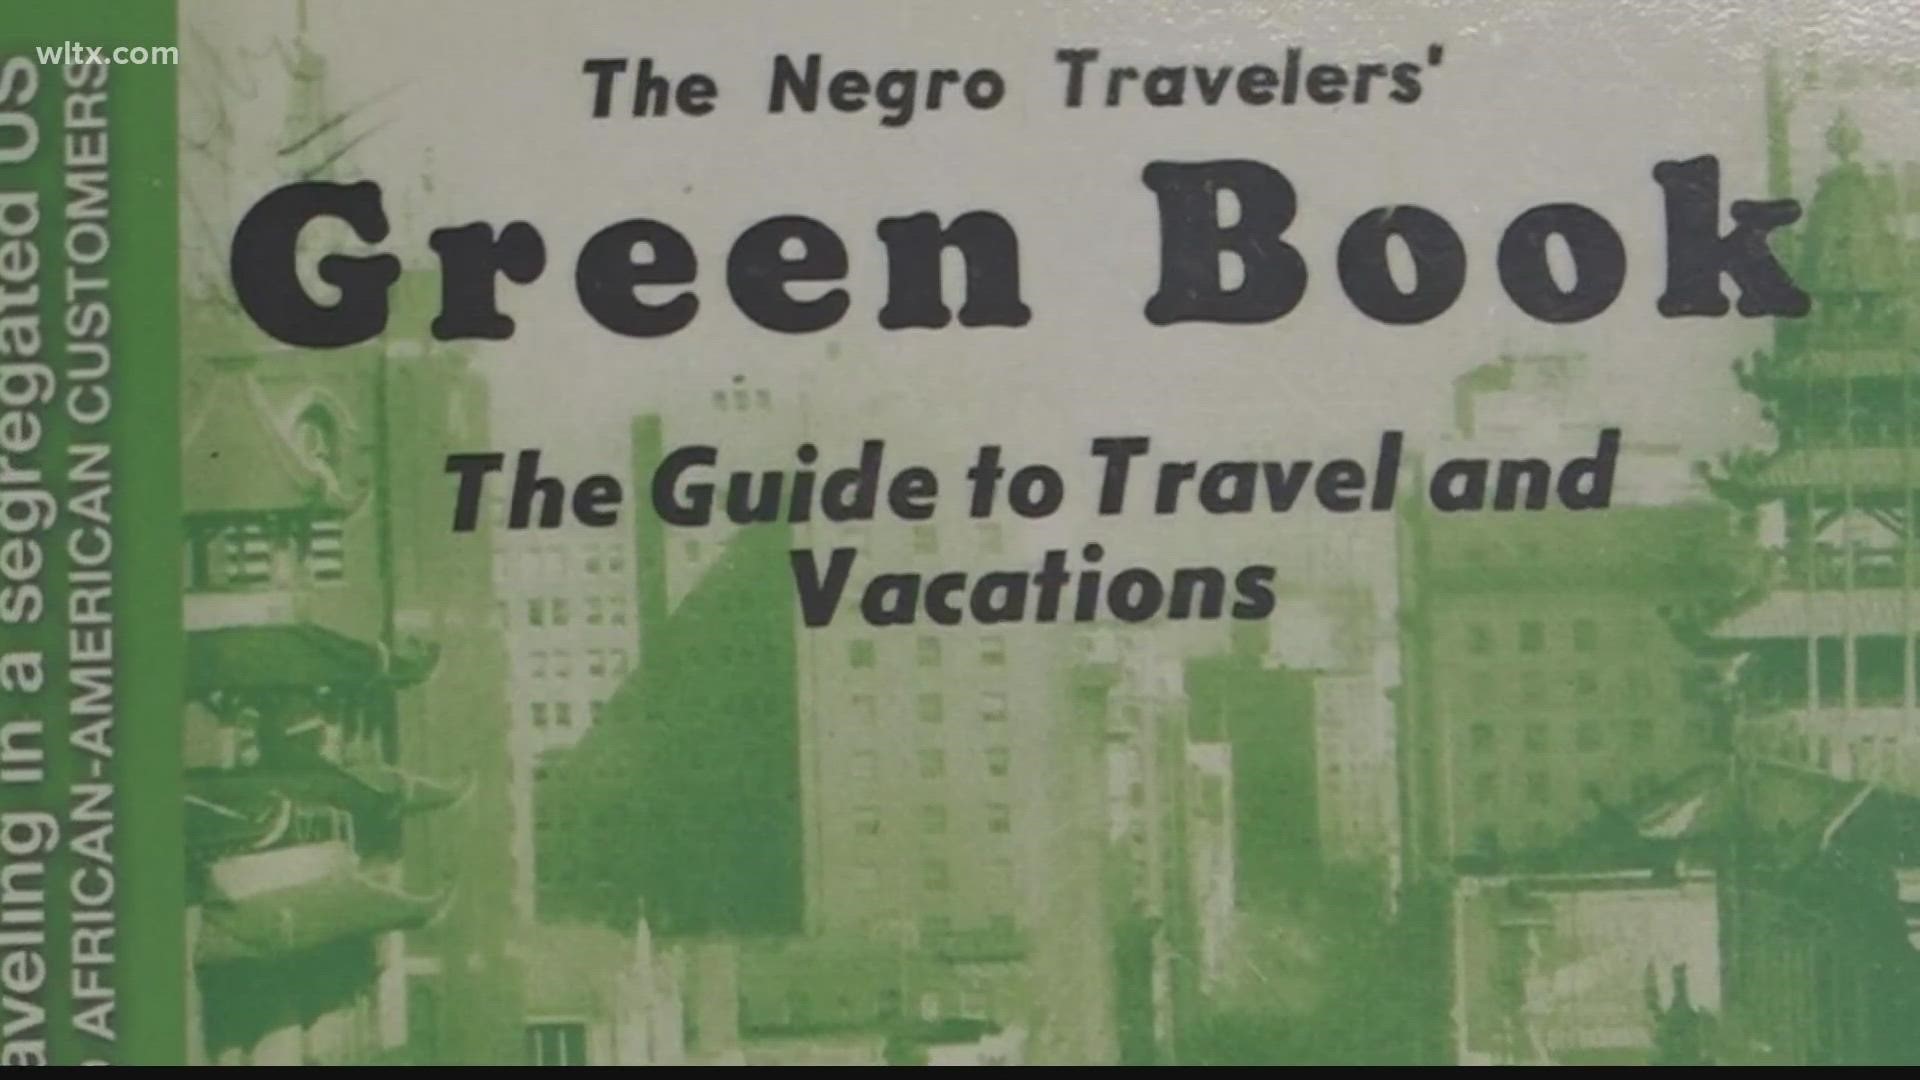 Green Book becomes historic guide to South Carolina | wltx.com